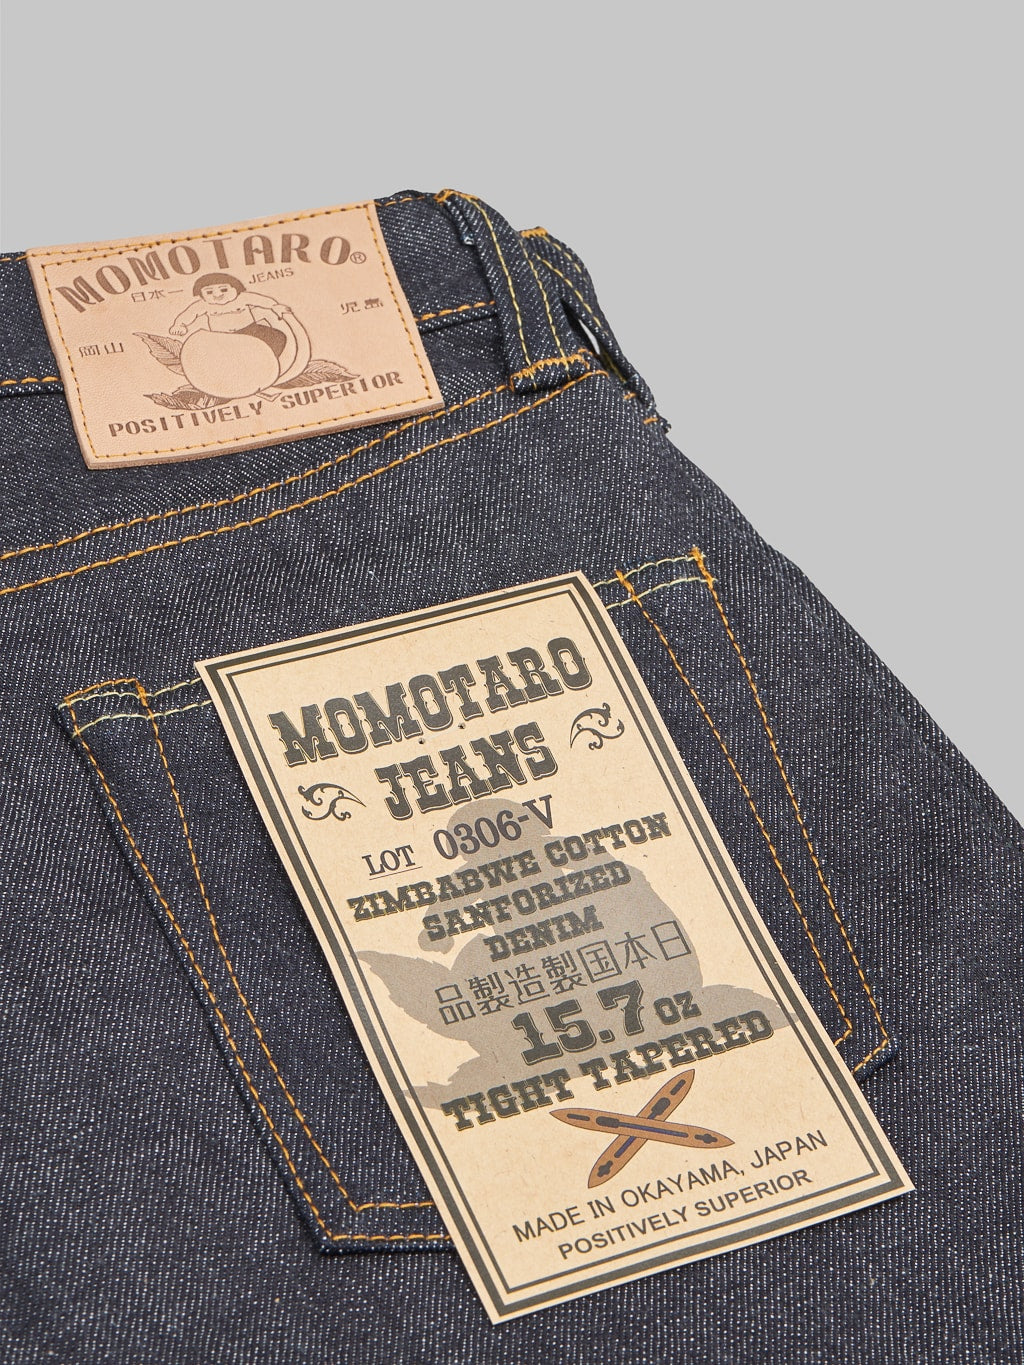 Momotaro 0306 V Tight Tapered Jeans pocket flasher